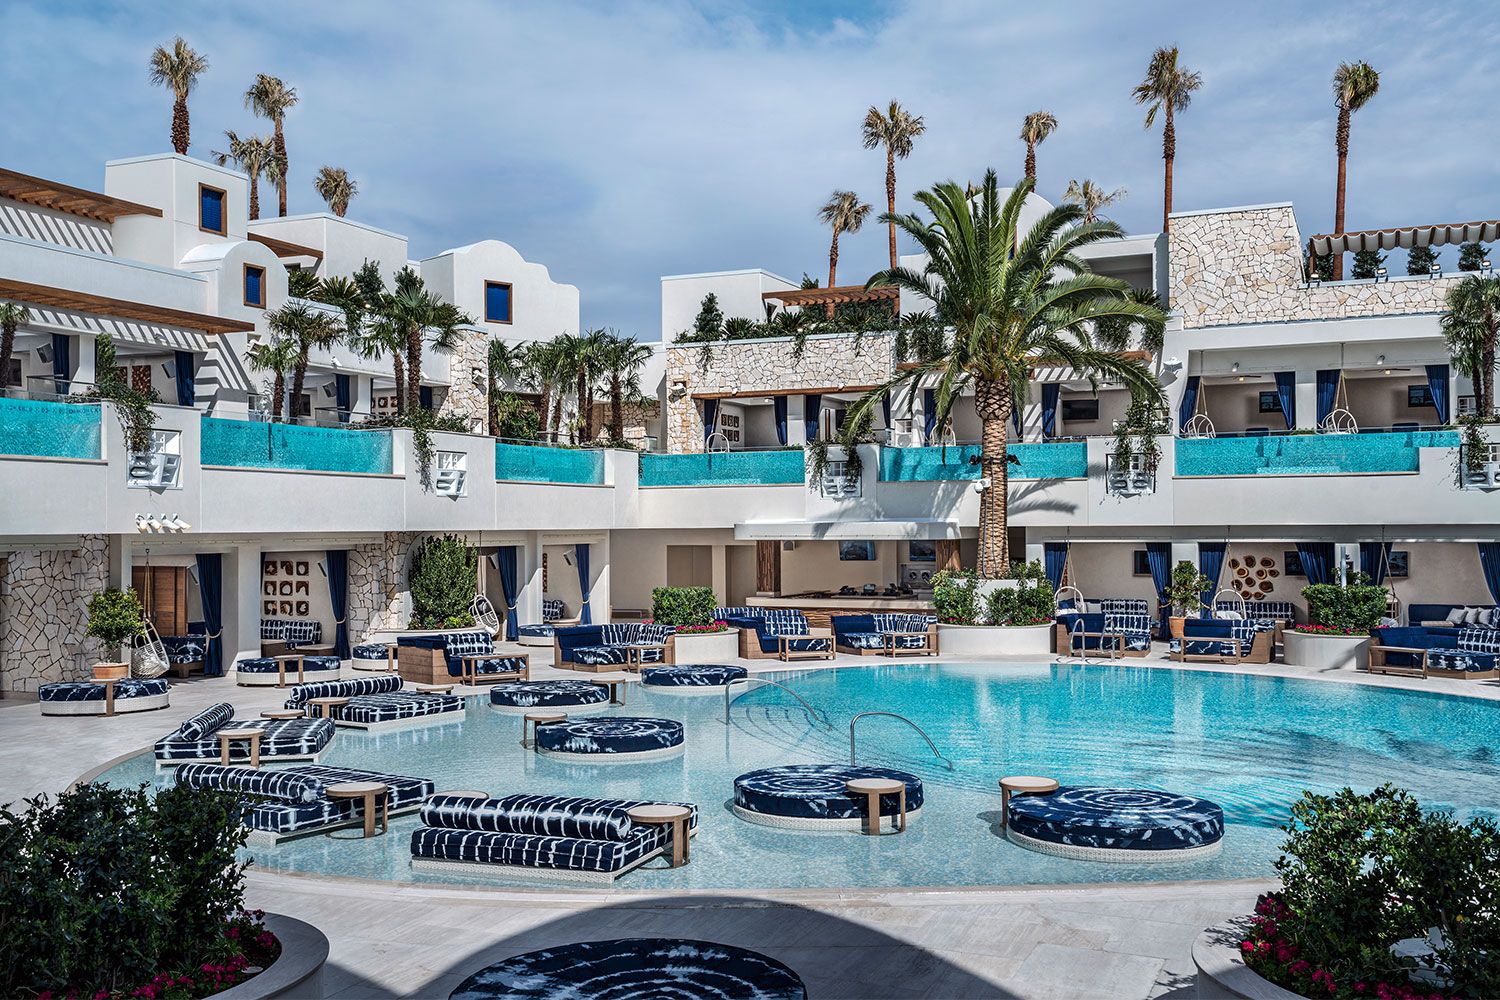 10 Best Pools In Las Vegas For 2019 Fun Cabanas Pool Parties In Vegas